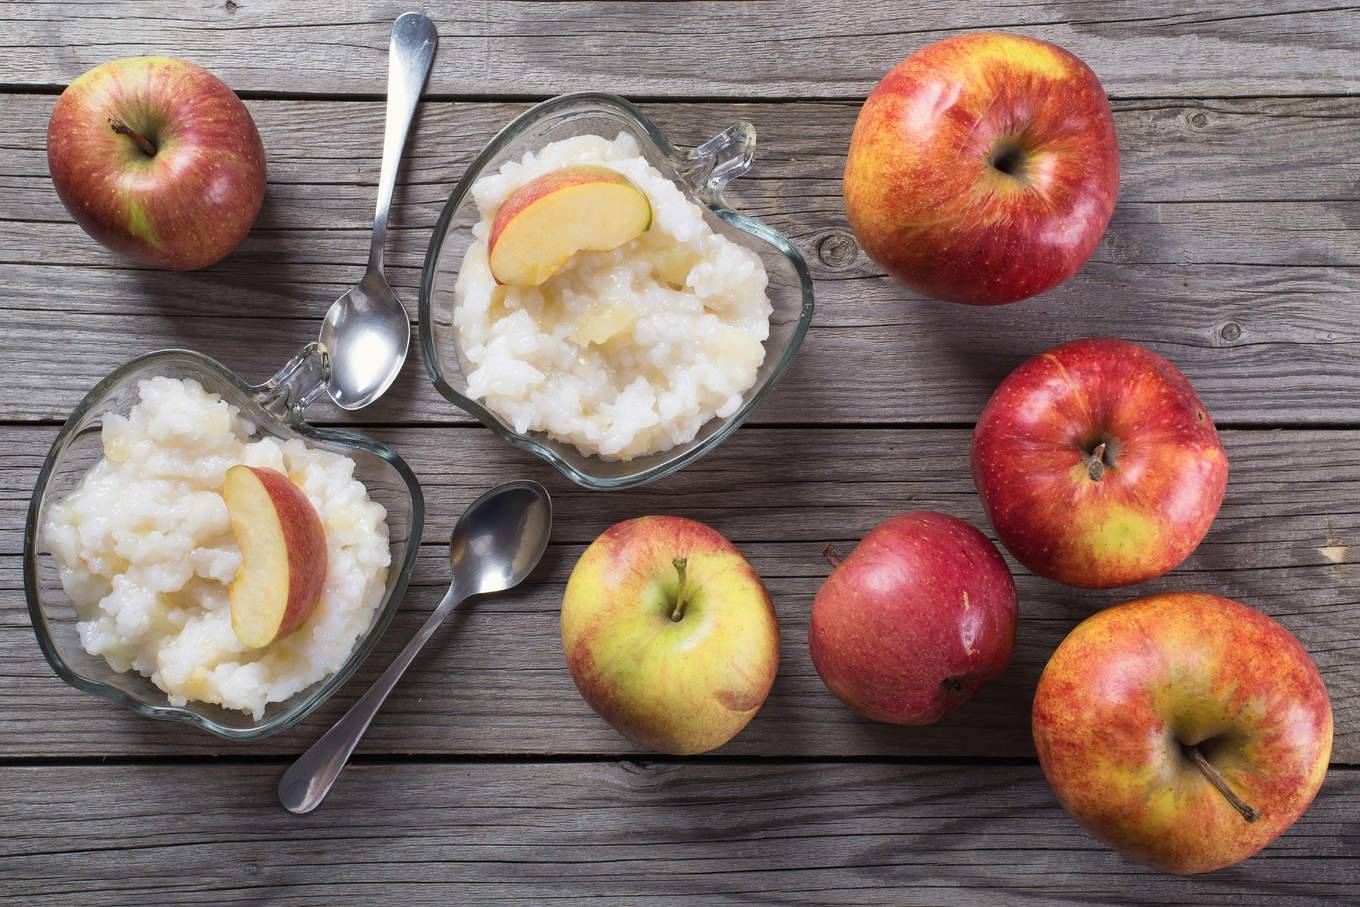 Яблочная монодиета на 7 дней- принципы методики, отзывы, результаты, фото до и после диеты